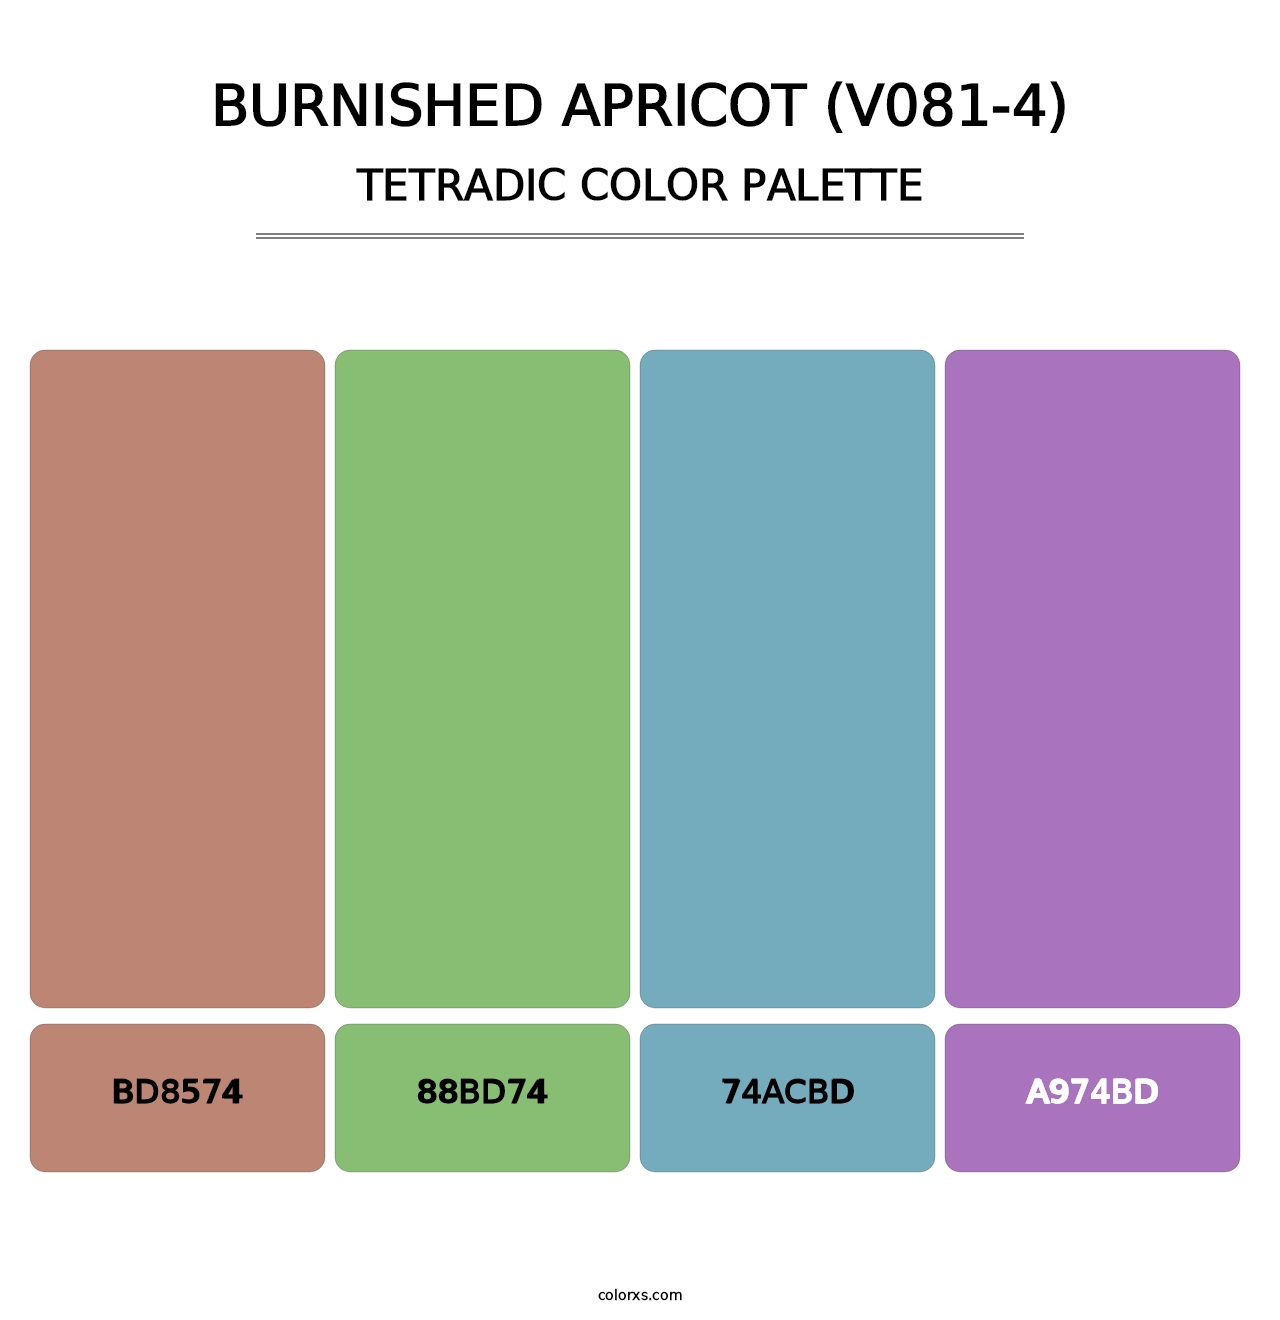 Burnished Apricot (V081-4) - Tetradic Color Palette